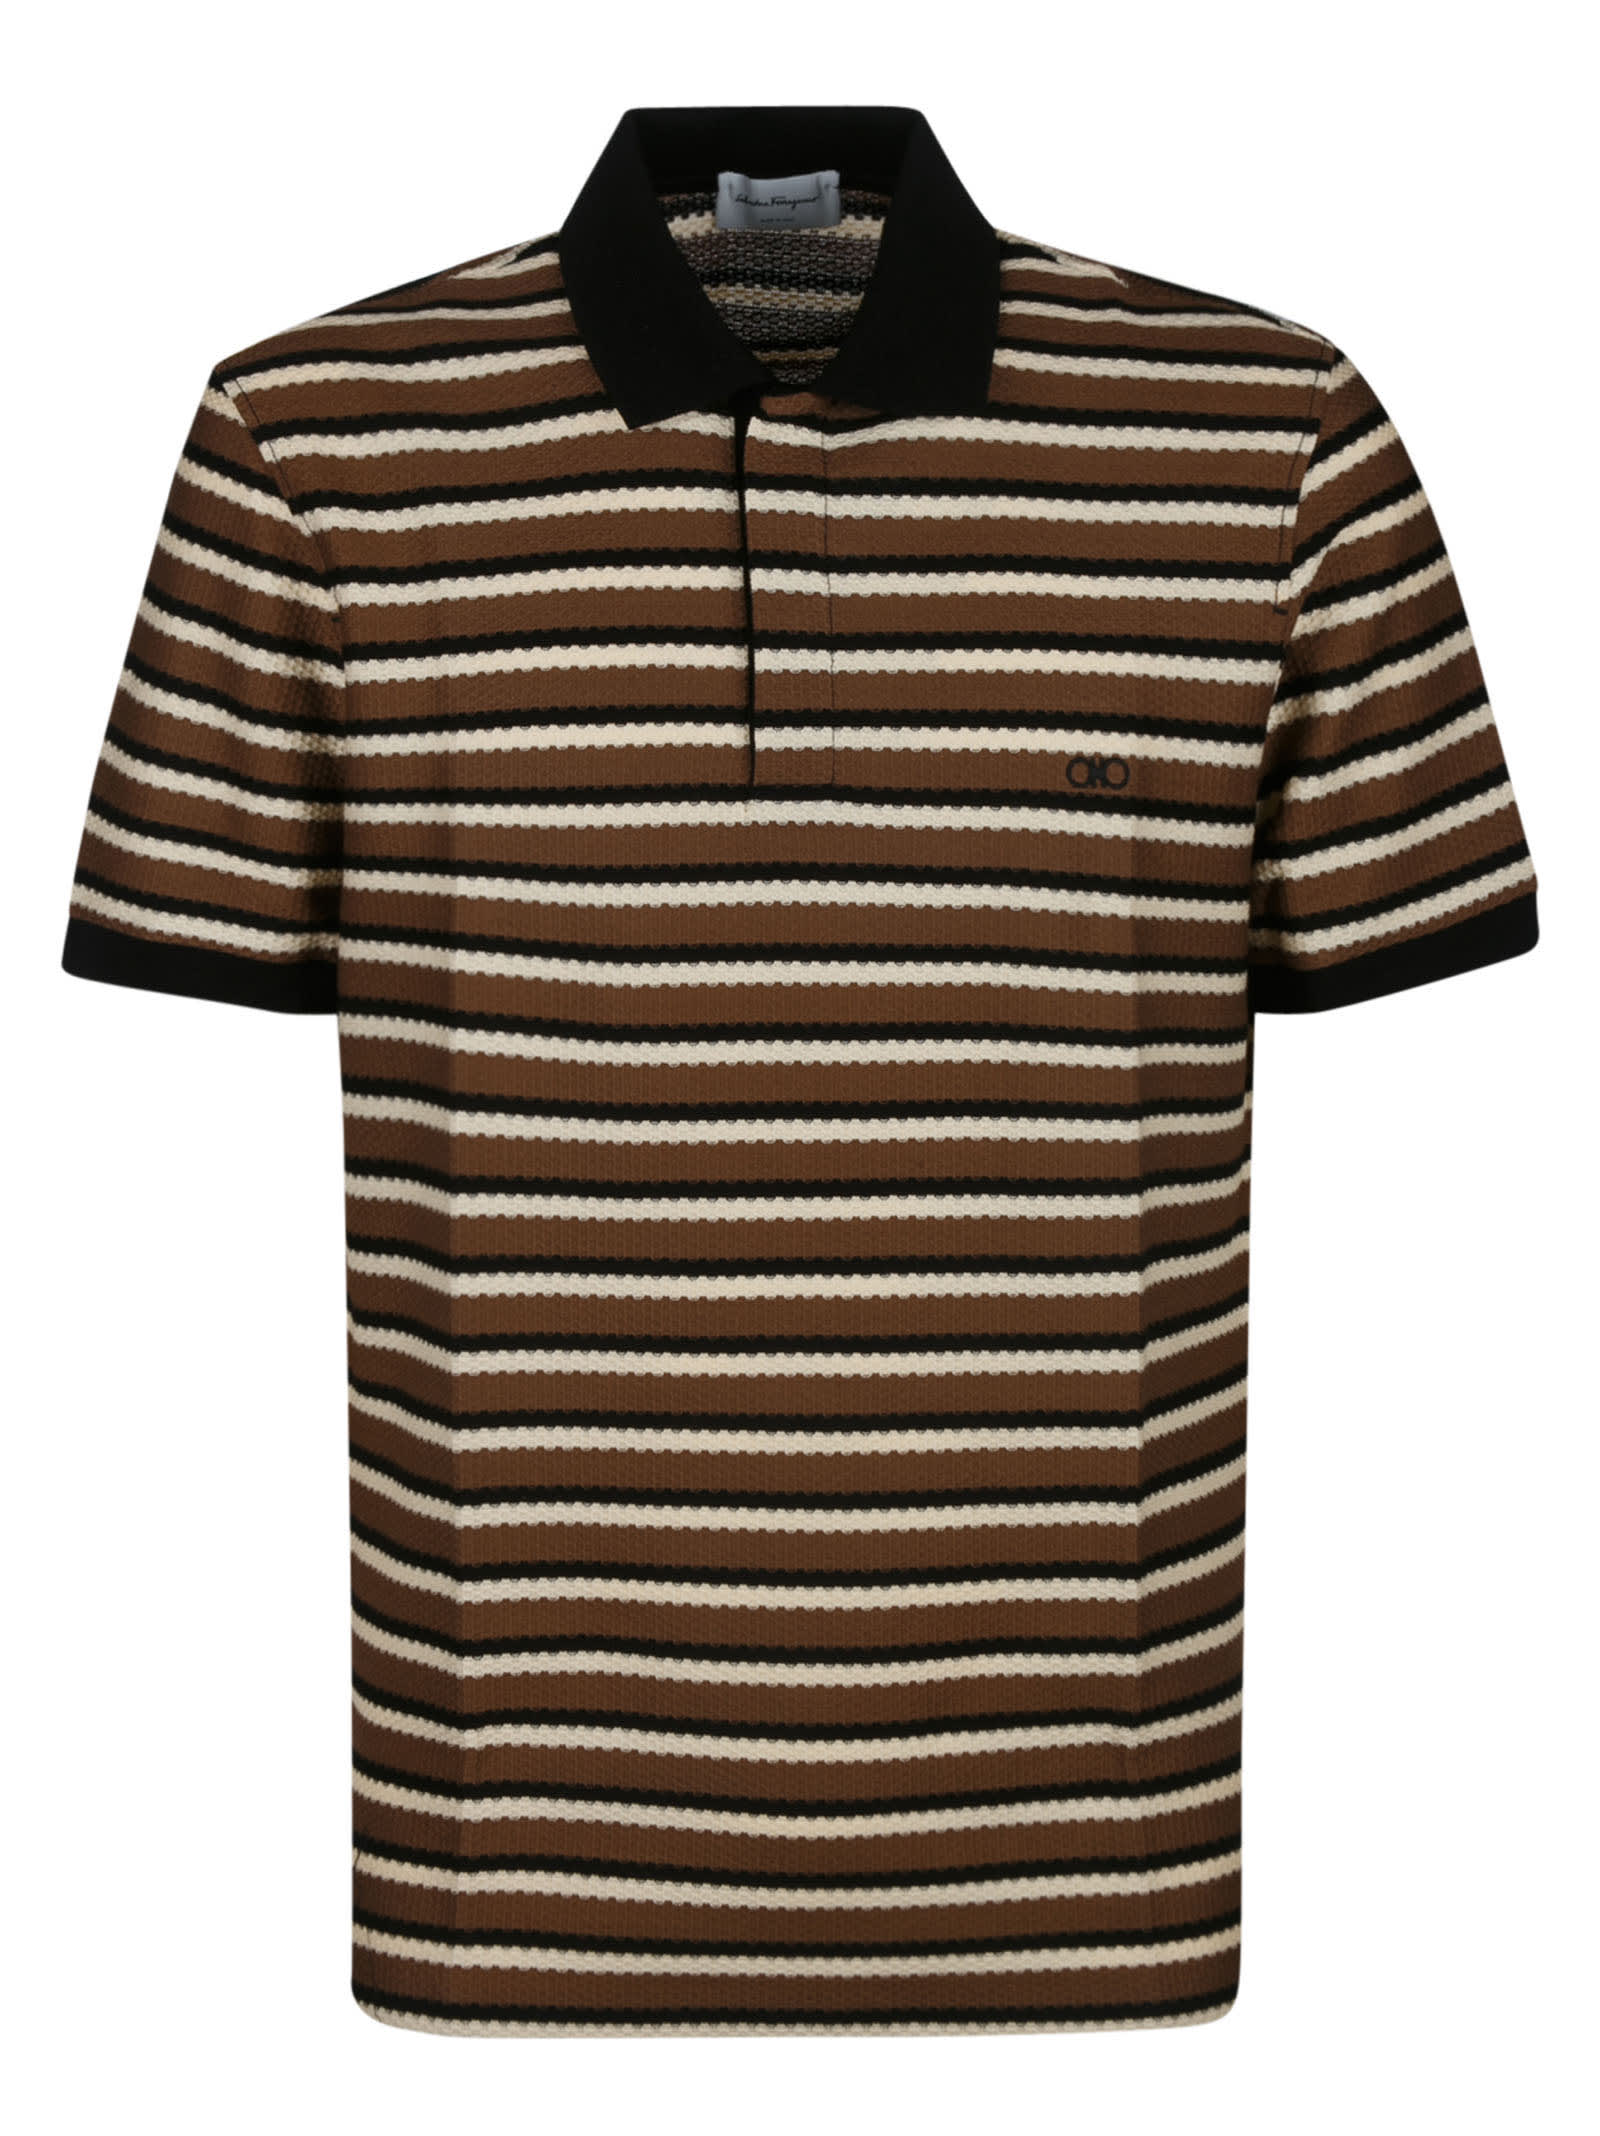 Salvatore Ferragamo Striped Polo Shirt